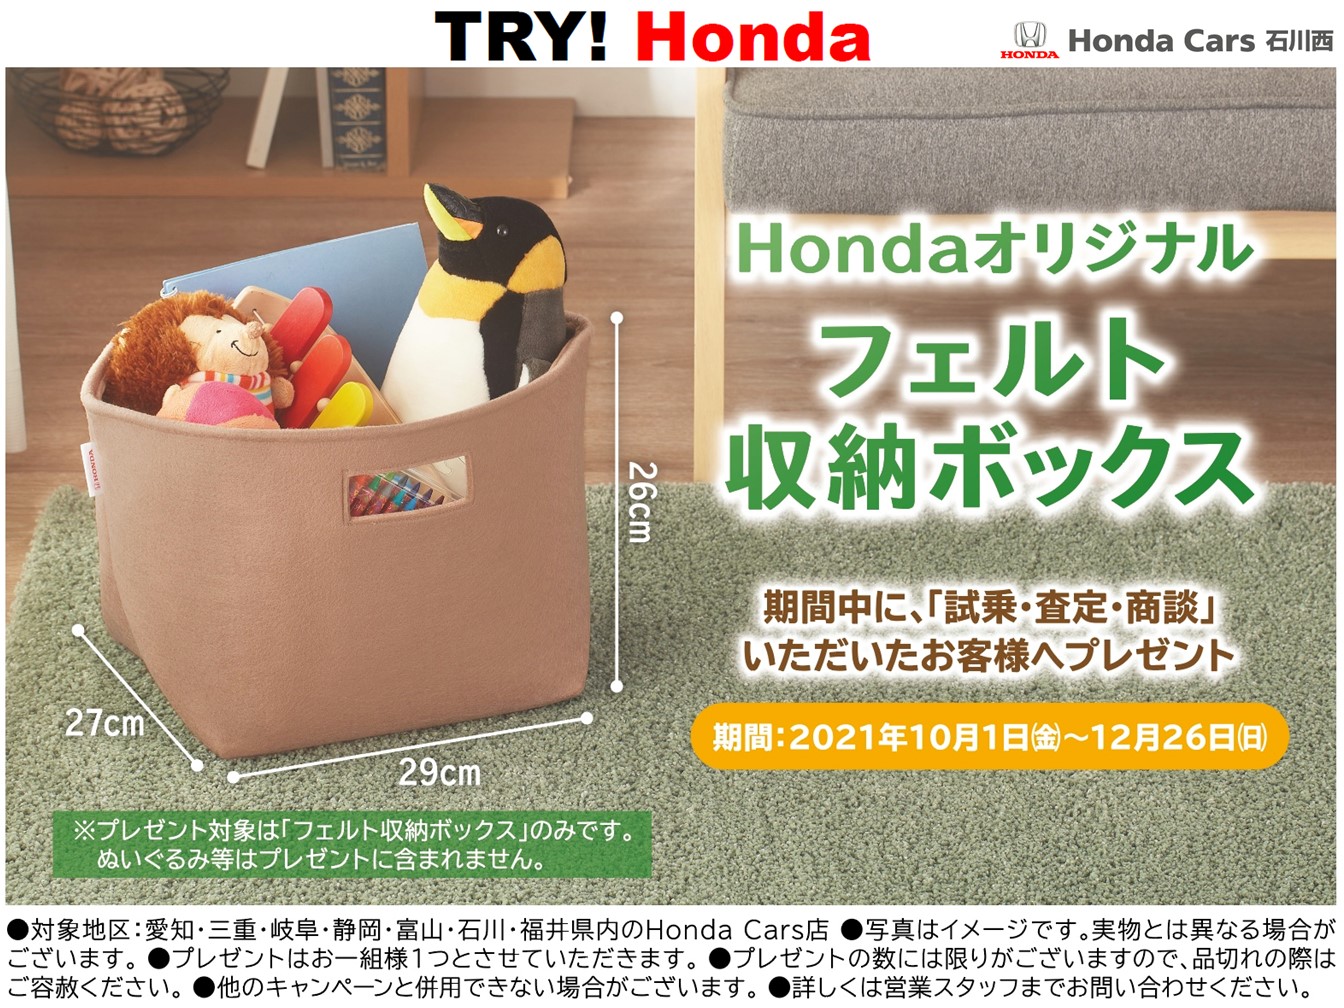 TRY!Honda2021